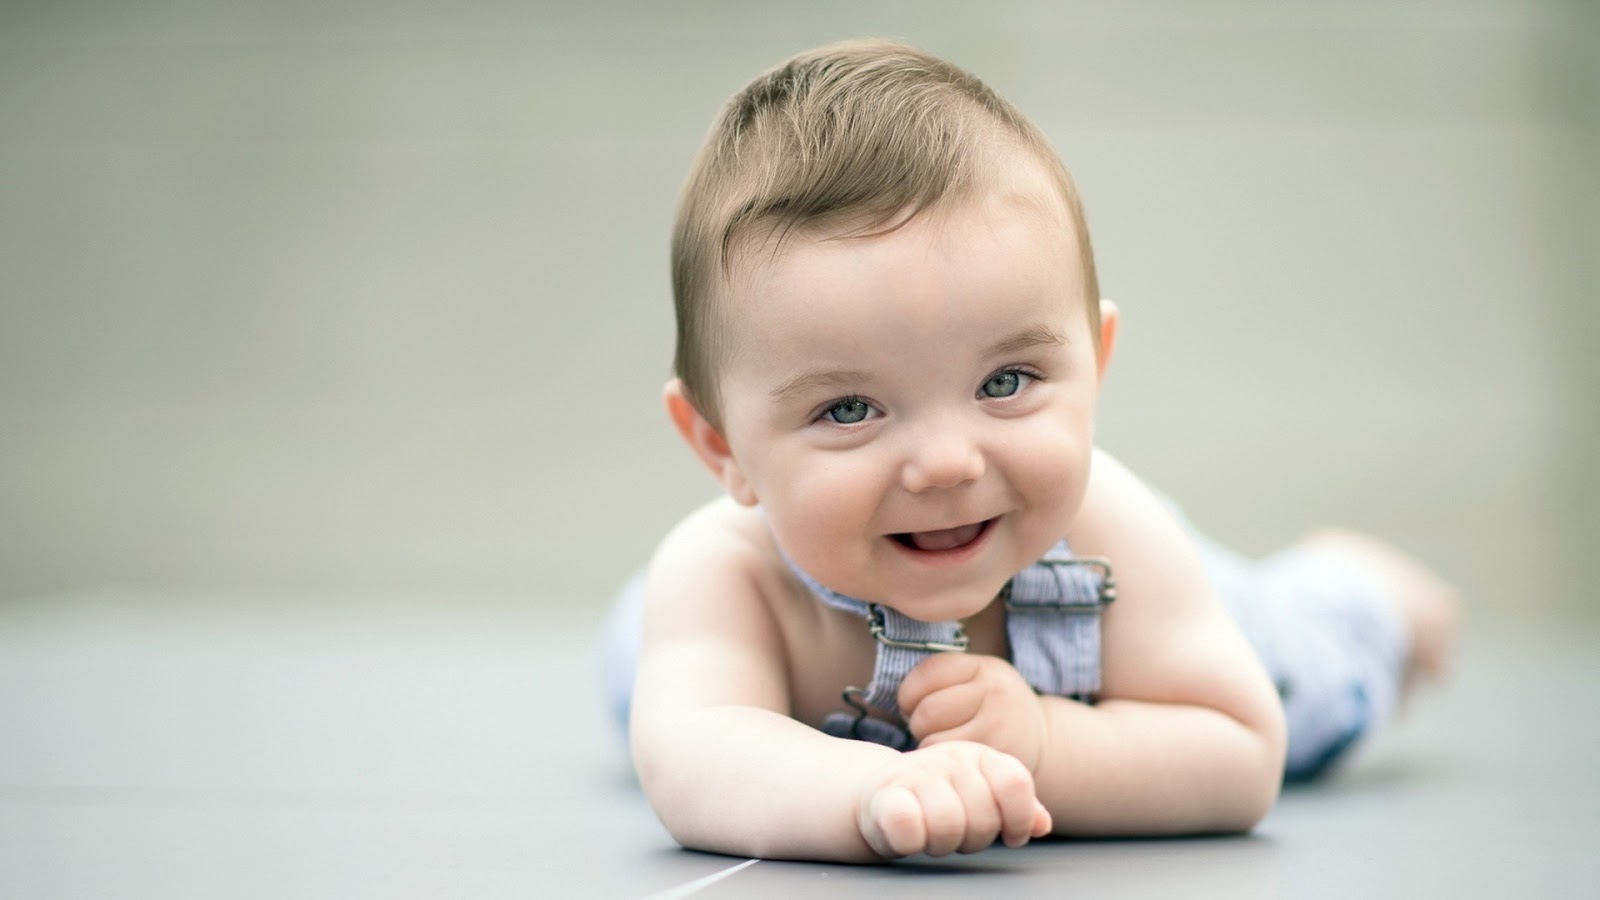 Foto Bayi Lucu Imut Dan Cantik Menggemaskan Informasi Bisnis Terbaru